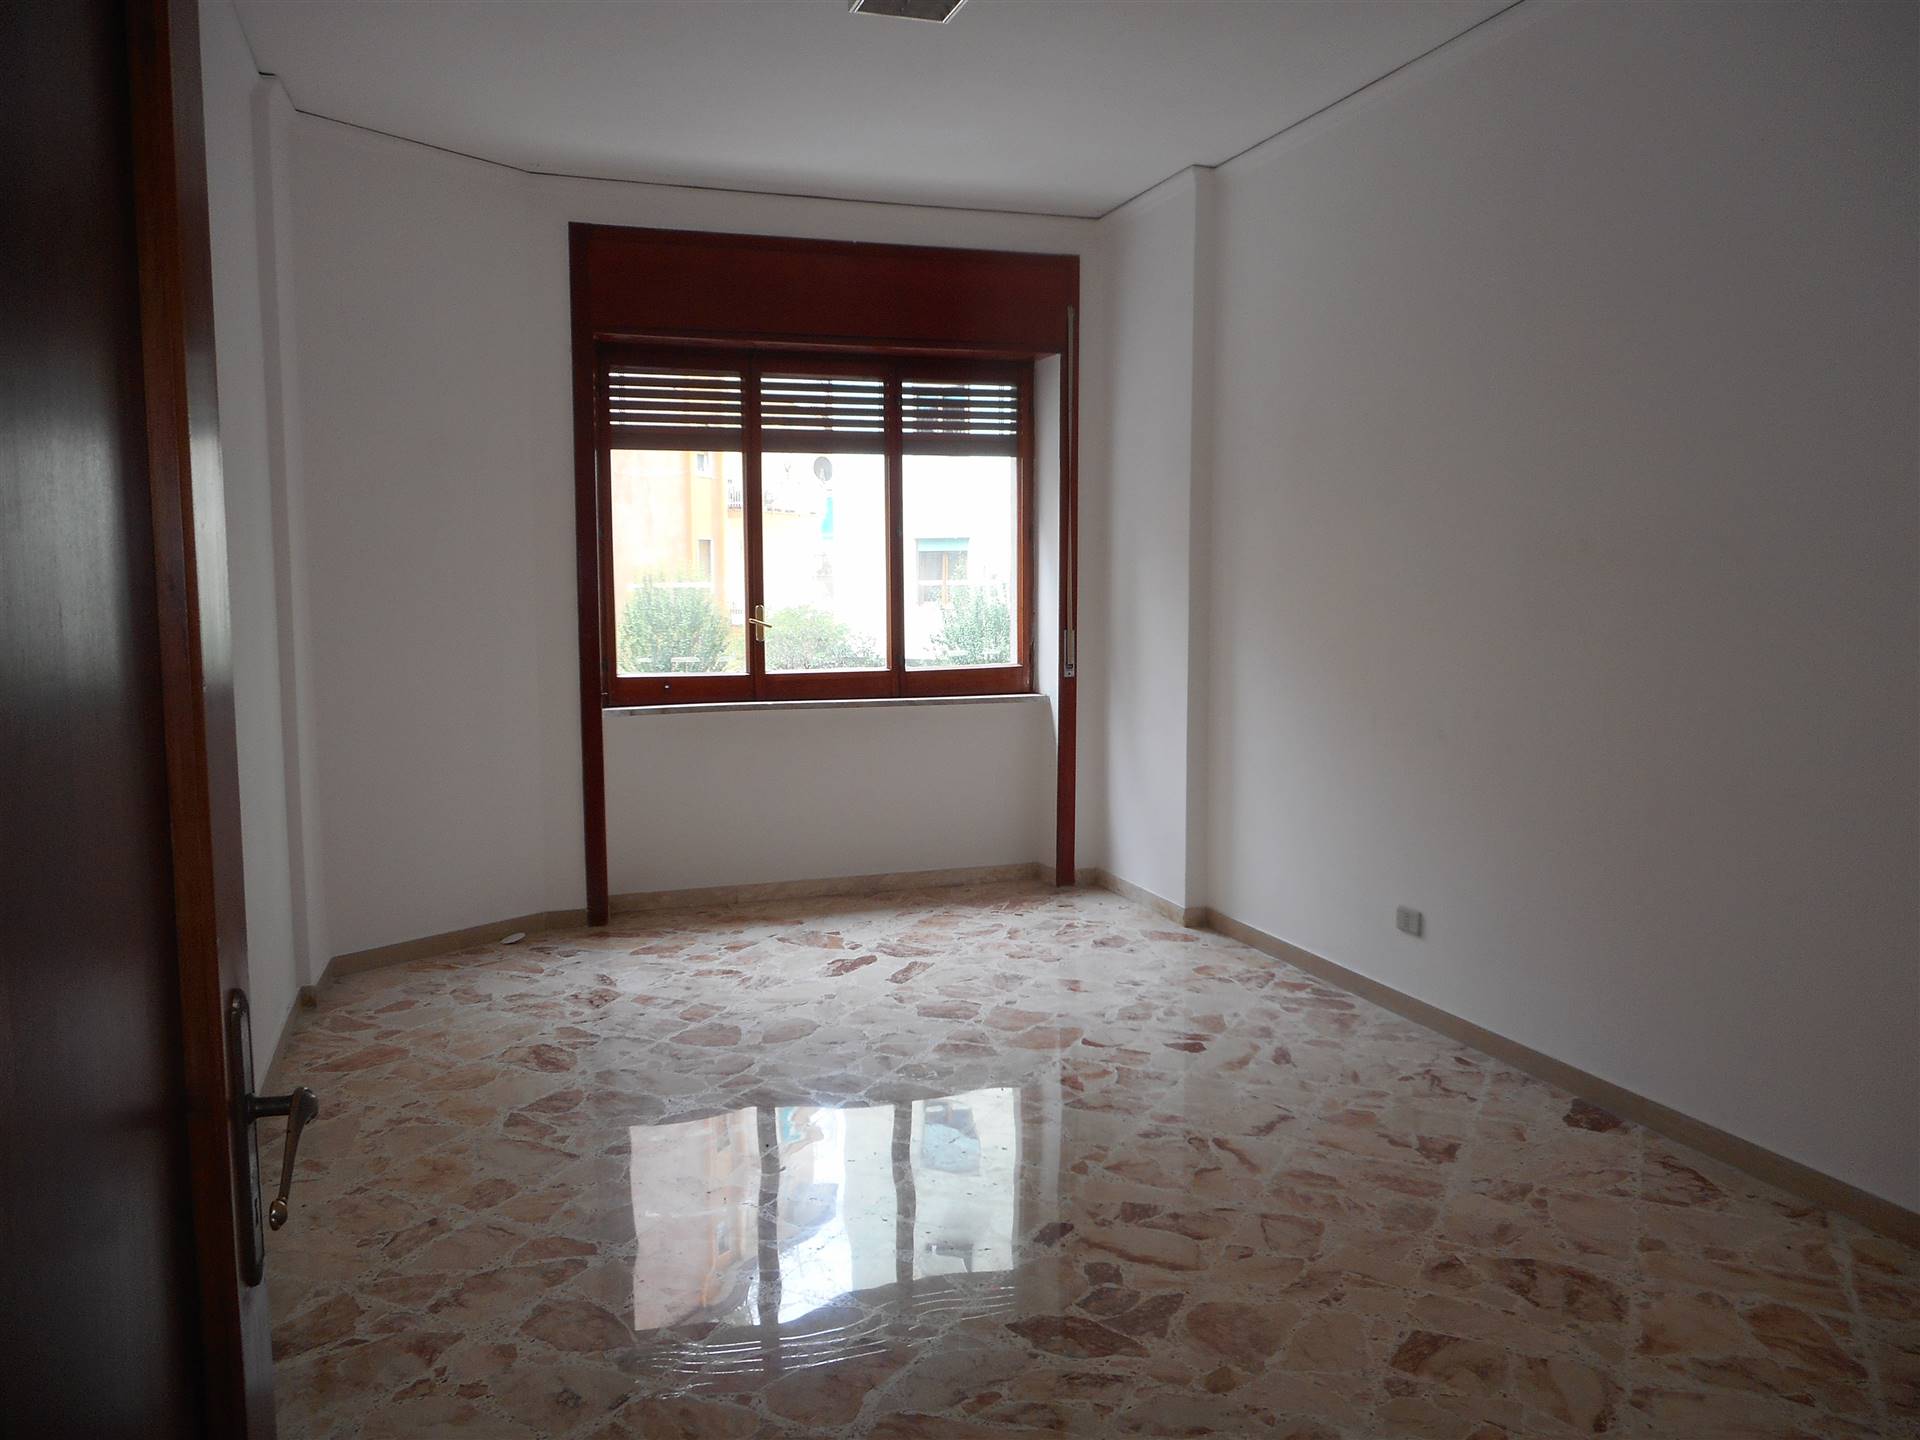 Appartamento in affitto a Salerno, 5 locali, zona Località: GELSI ROSSI / MOBILIO / GUERCIO, prezzo € 800 | CambioCasa.it